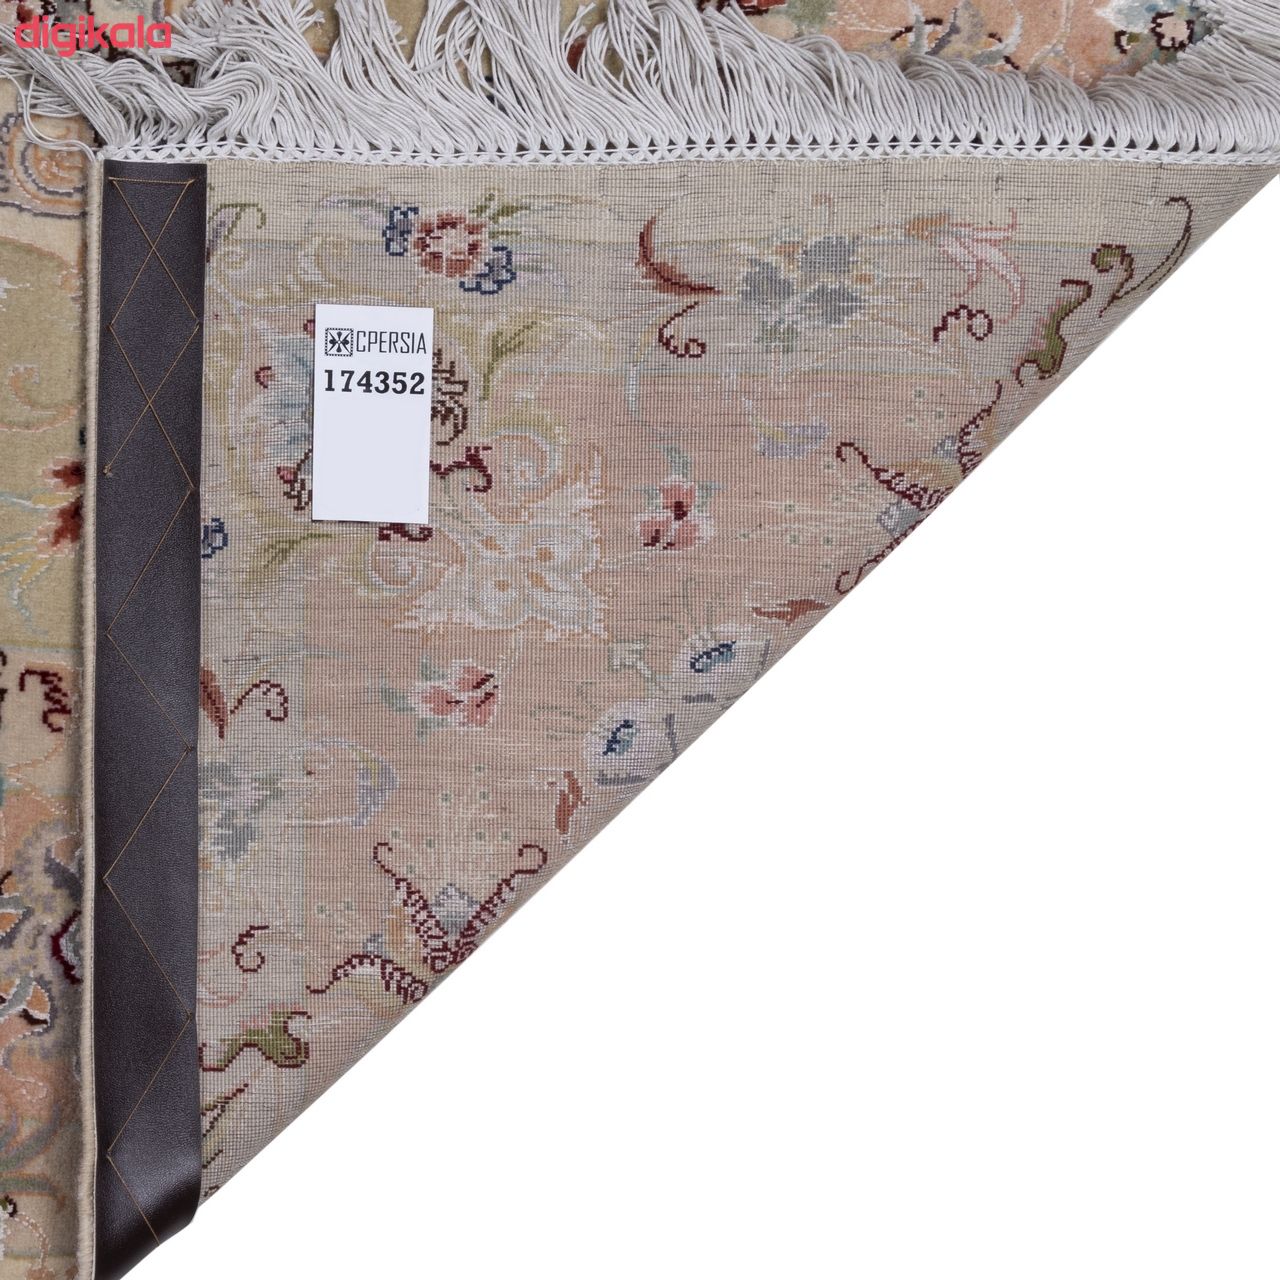 فرش دستباف قدیمی سه متری سی پرشیا کد 174352